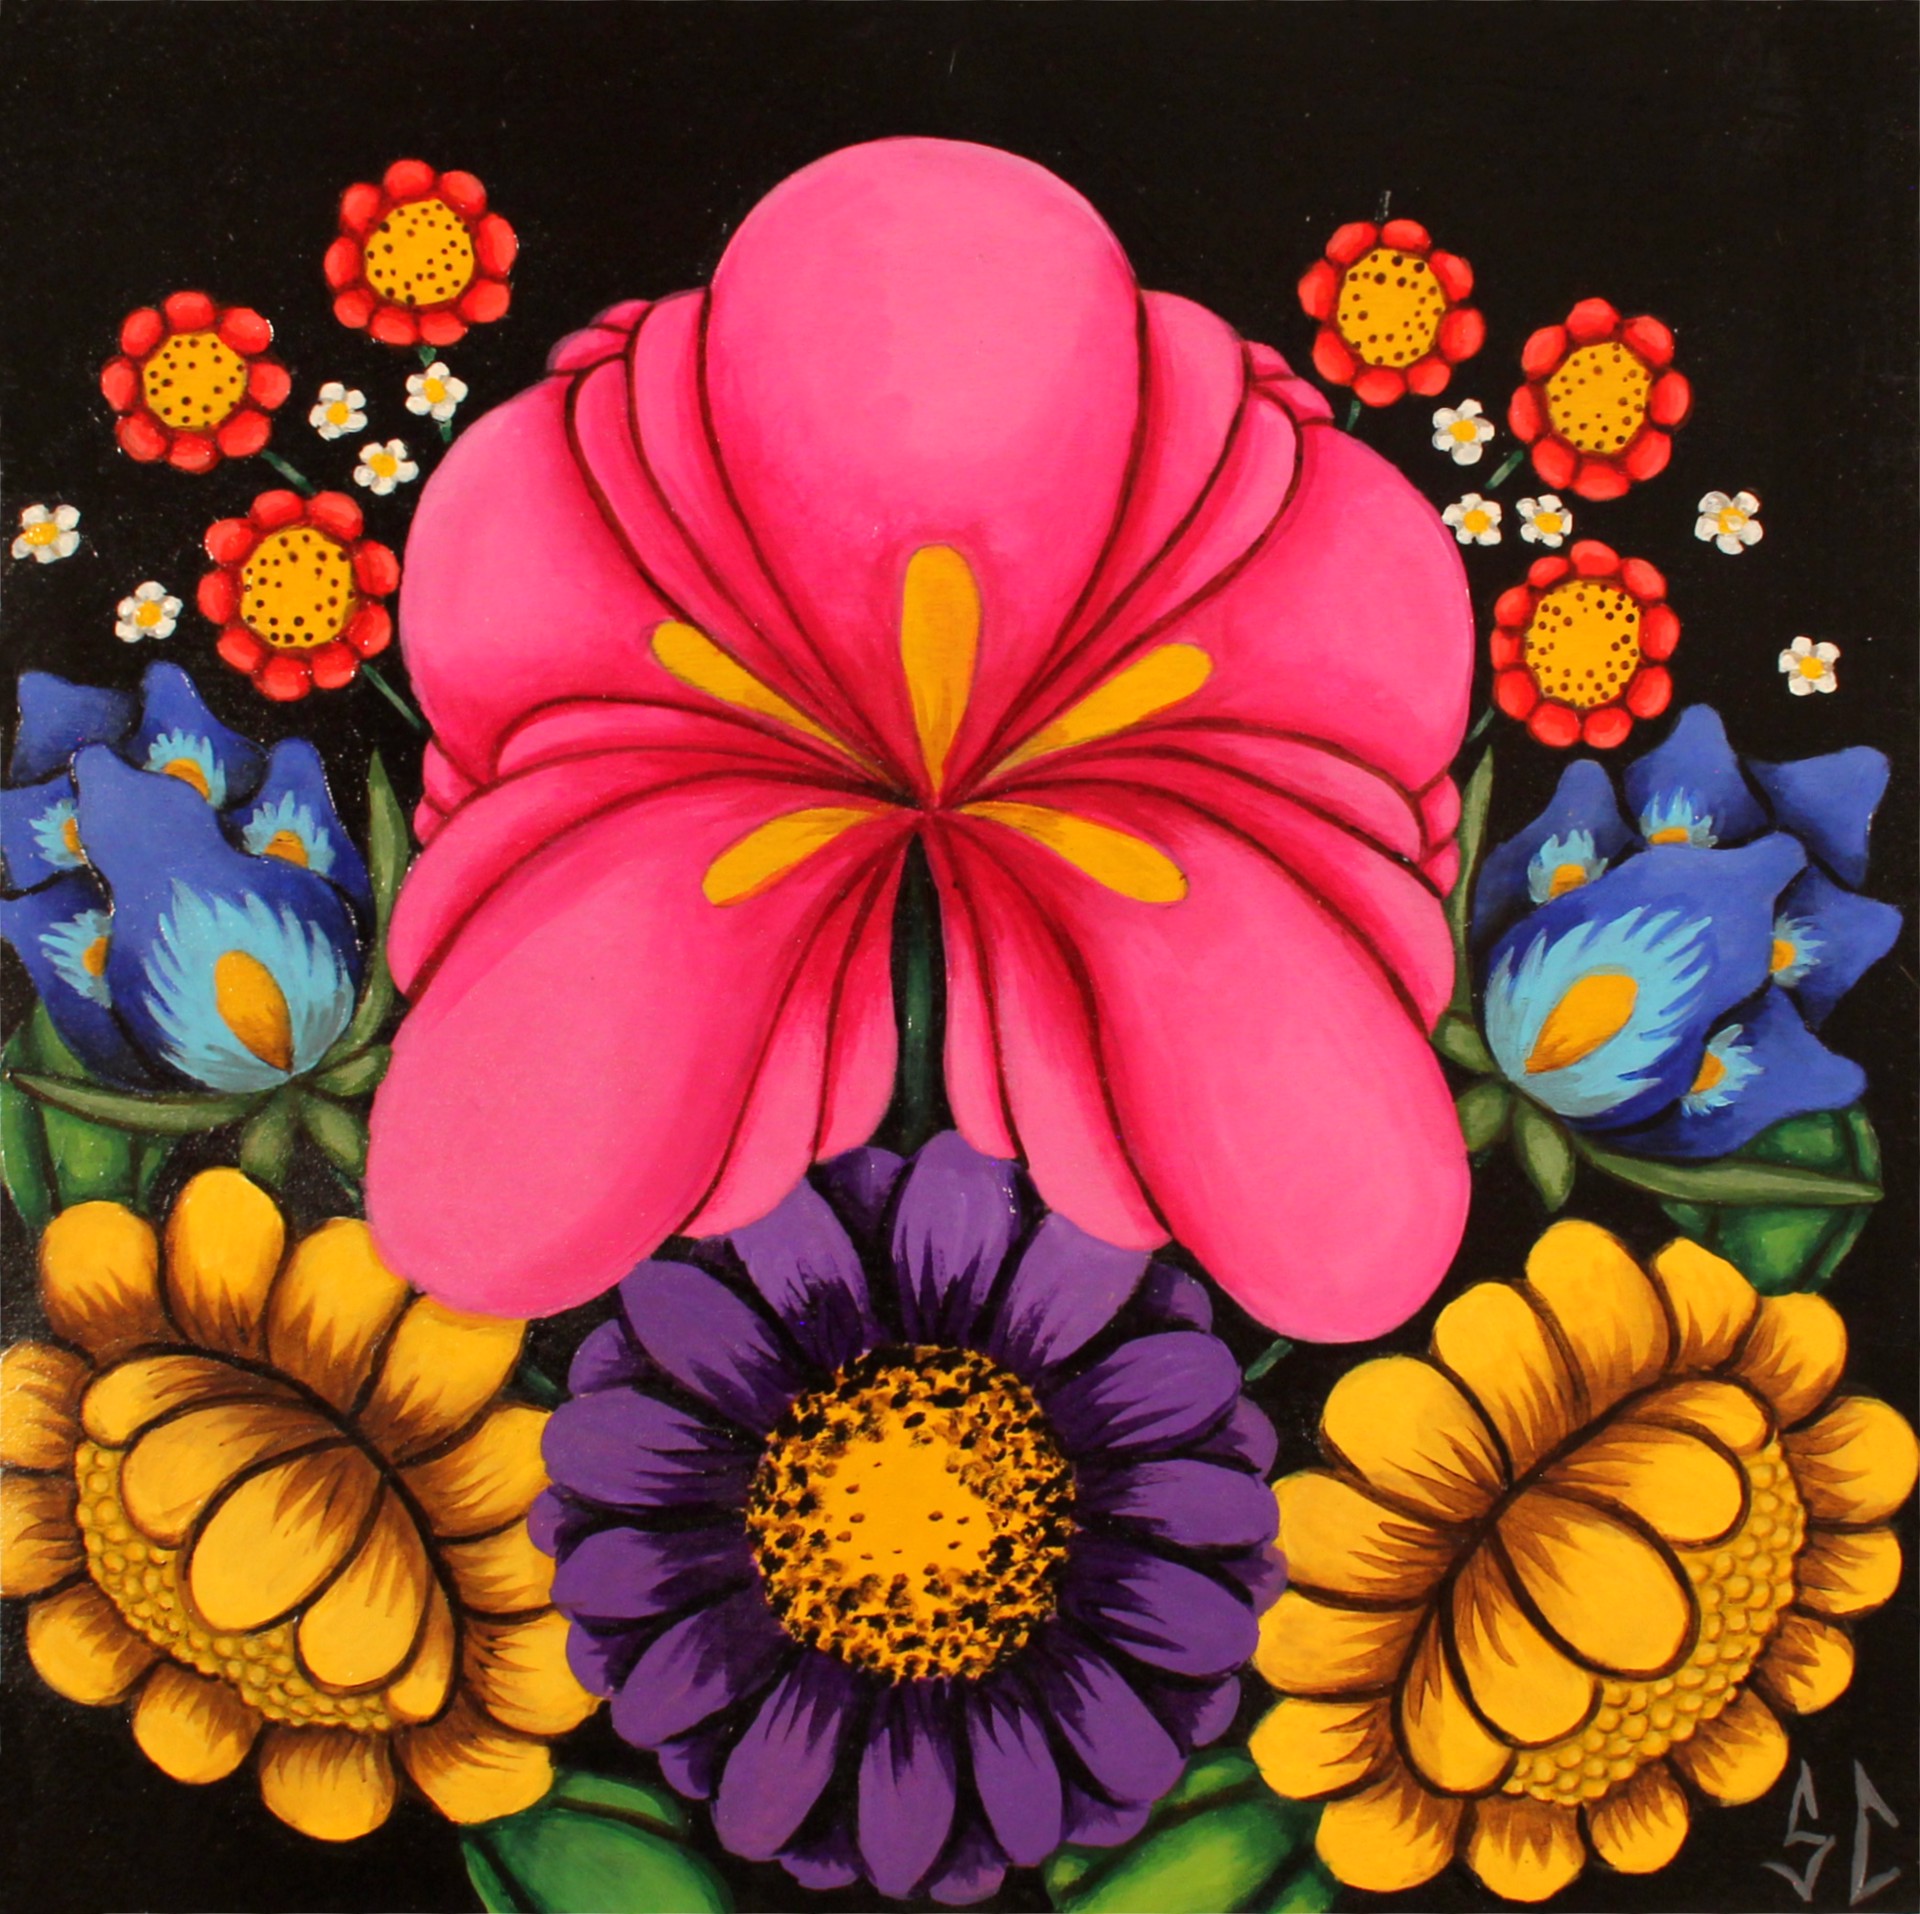 Las Flores by Selina Calvo, CA (b. 1983)